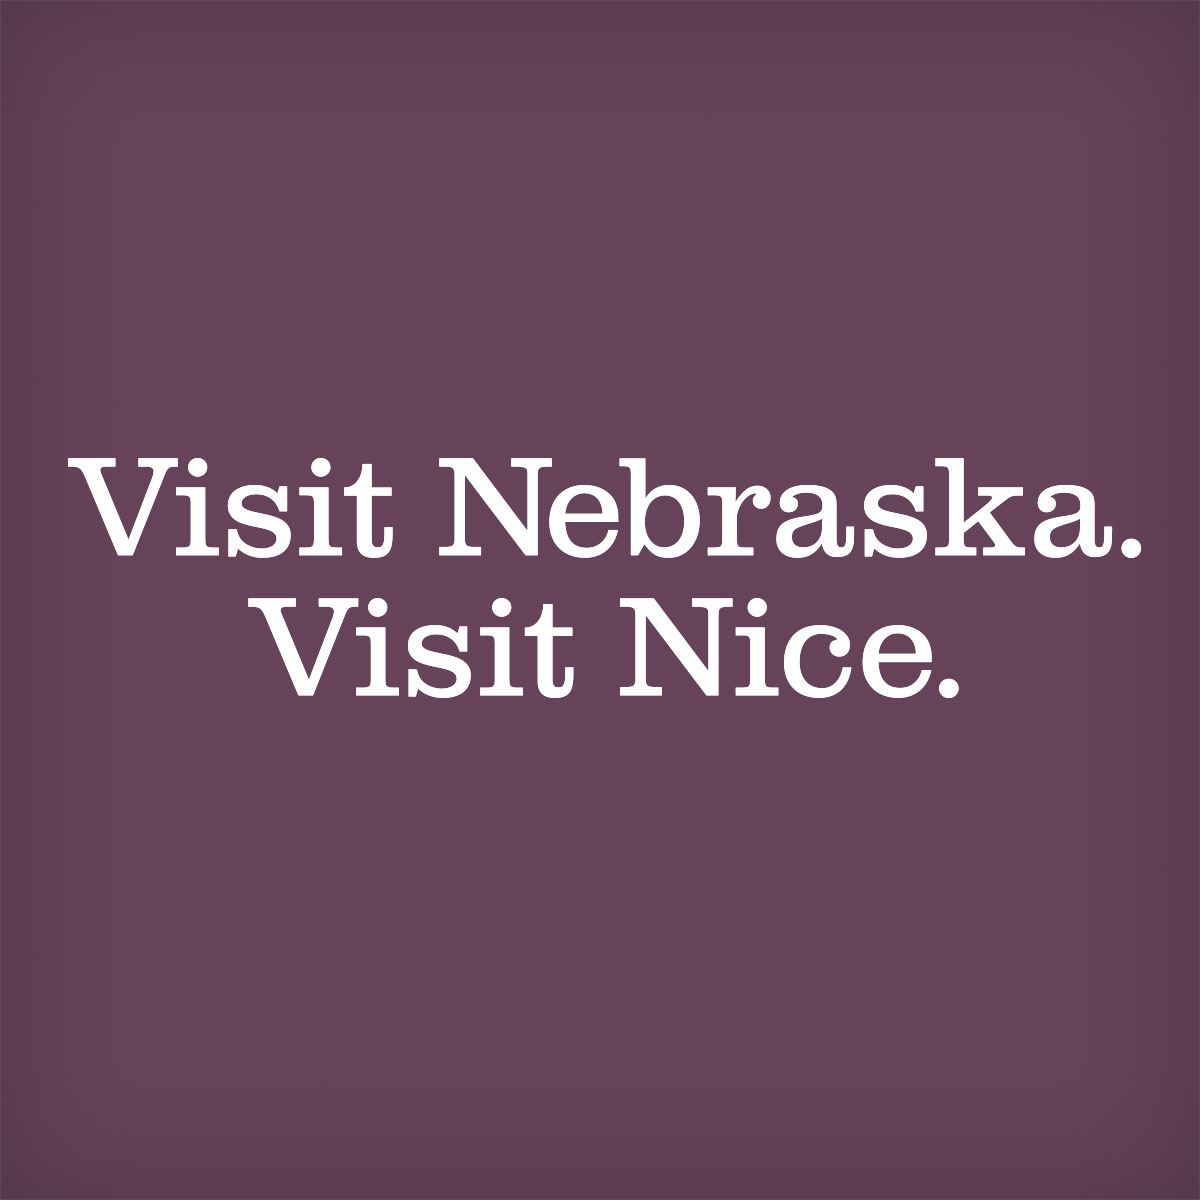 Visit Nebraska